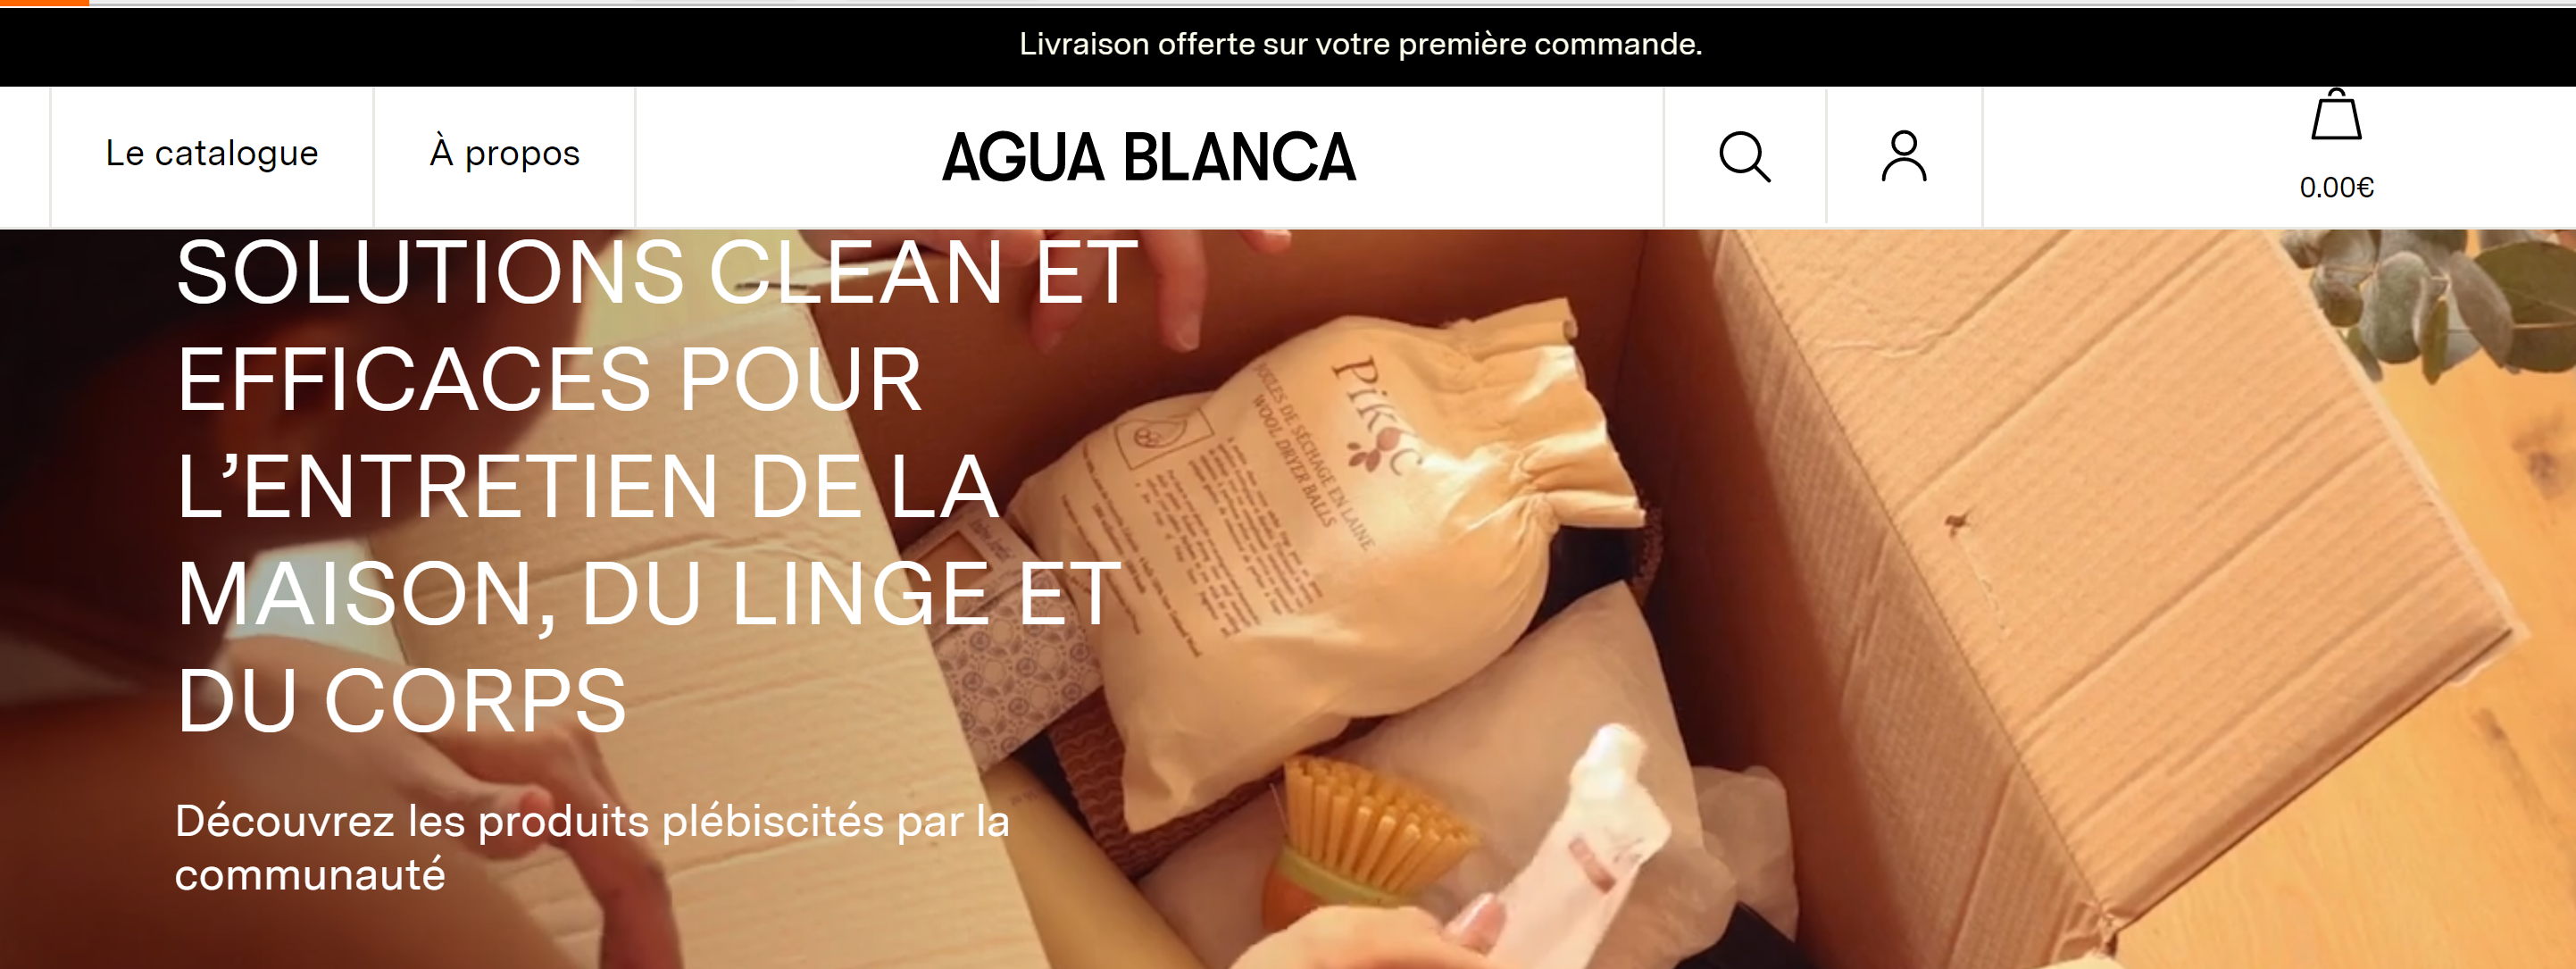 法国二手奢侈品平台 Vestiaire 前CEO创立的个护家清电商平台 Agua Blanca 计划进军国际市场